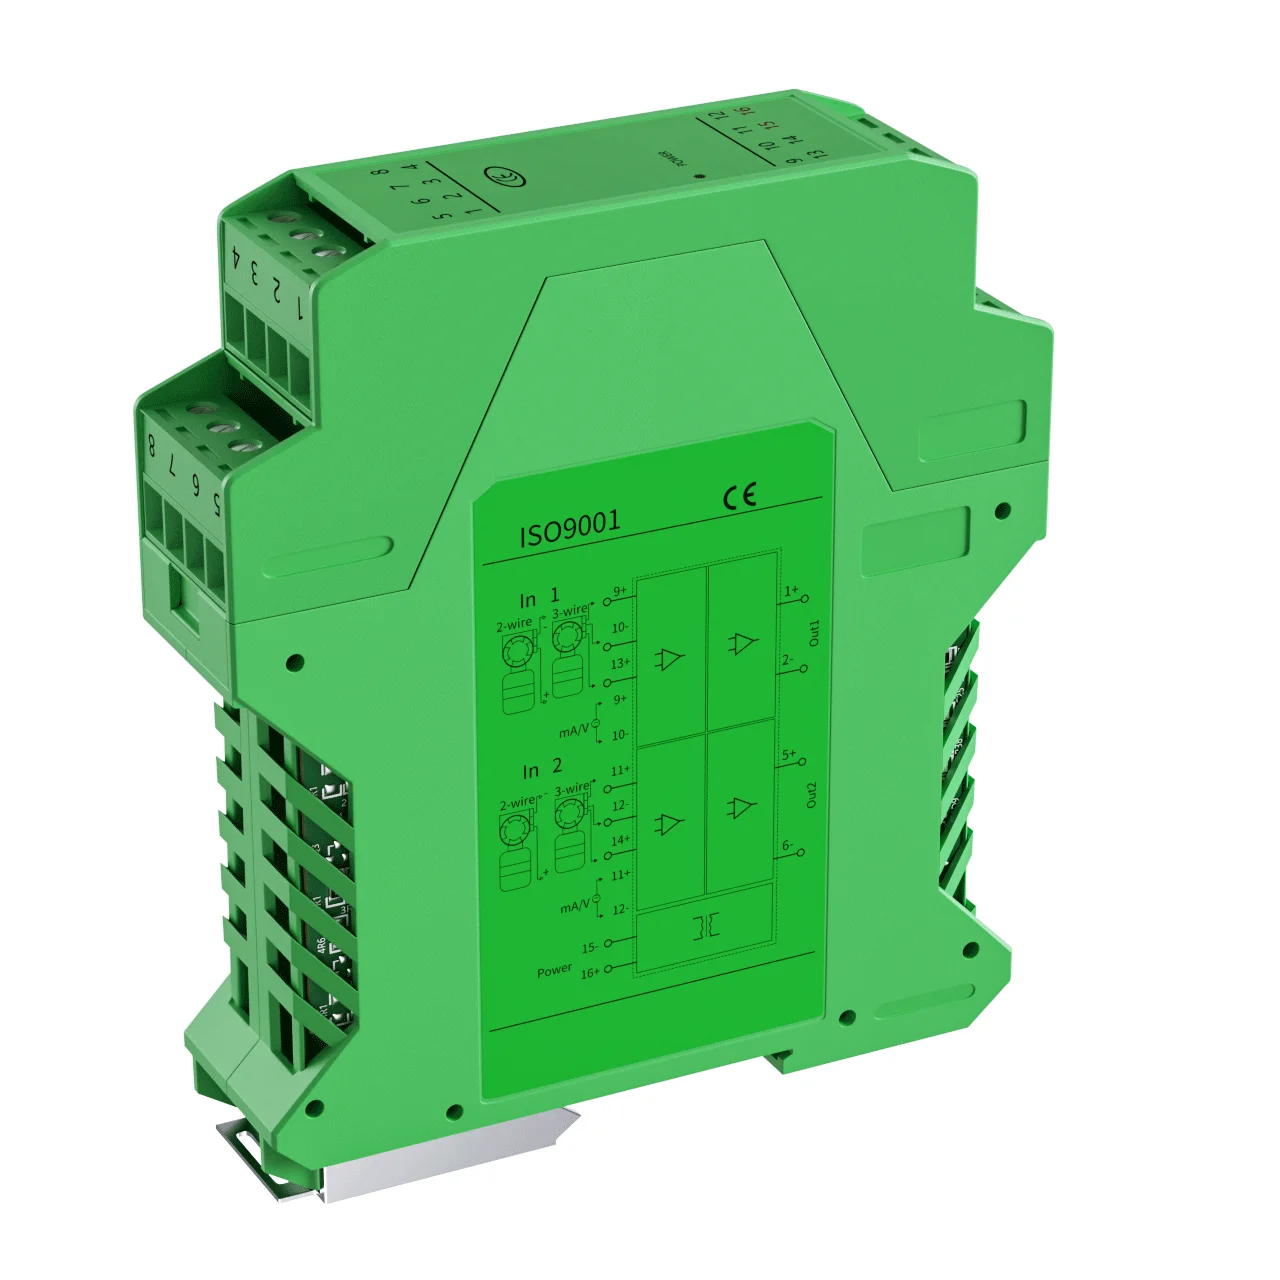 

4-20mA to RS485 Signal Isolator 0-10V 0-5V To 4-20mA Analog Signal Converter Isolator 1 In 1 Out DC24V Signal Isolator